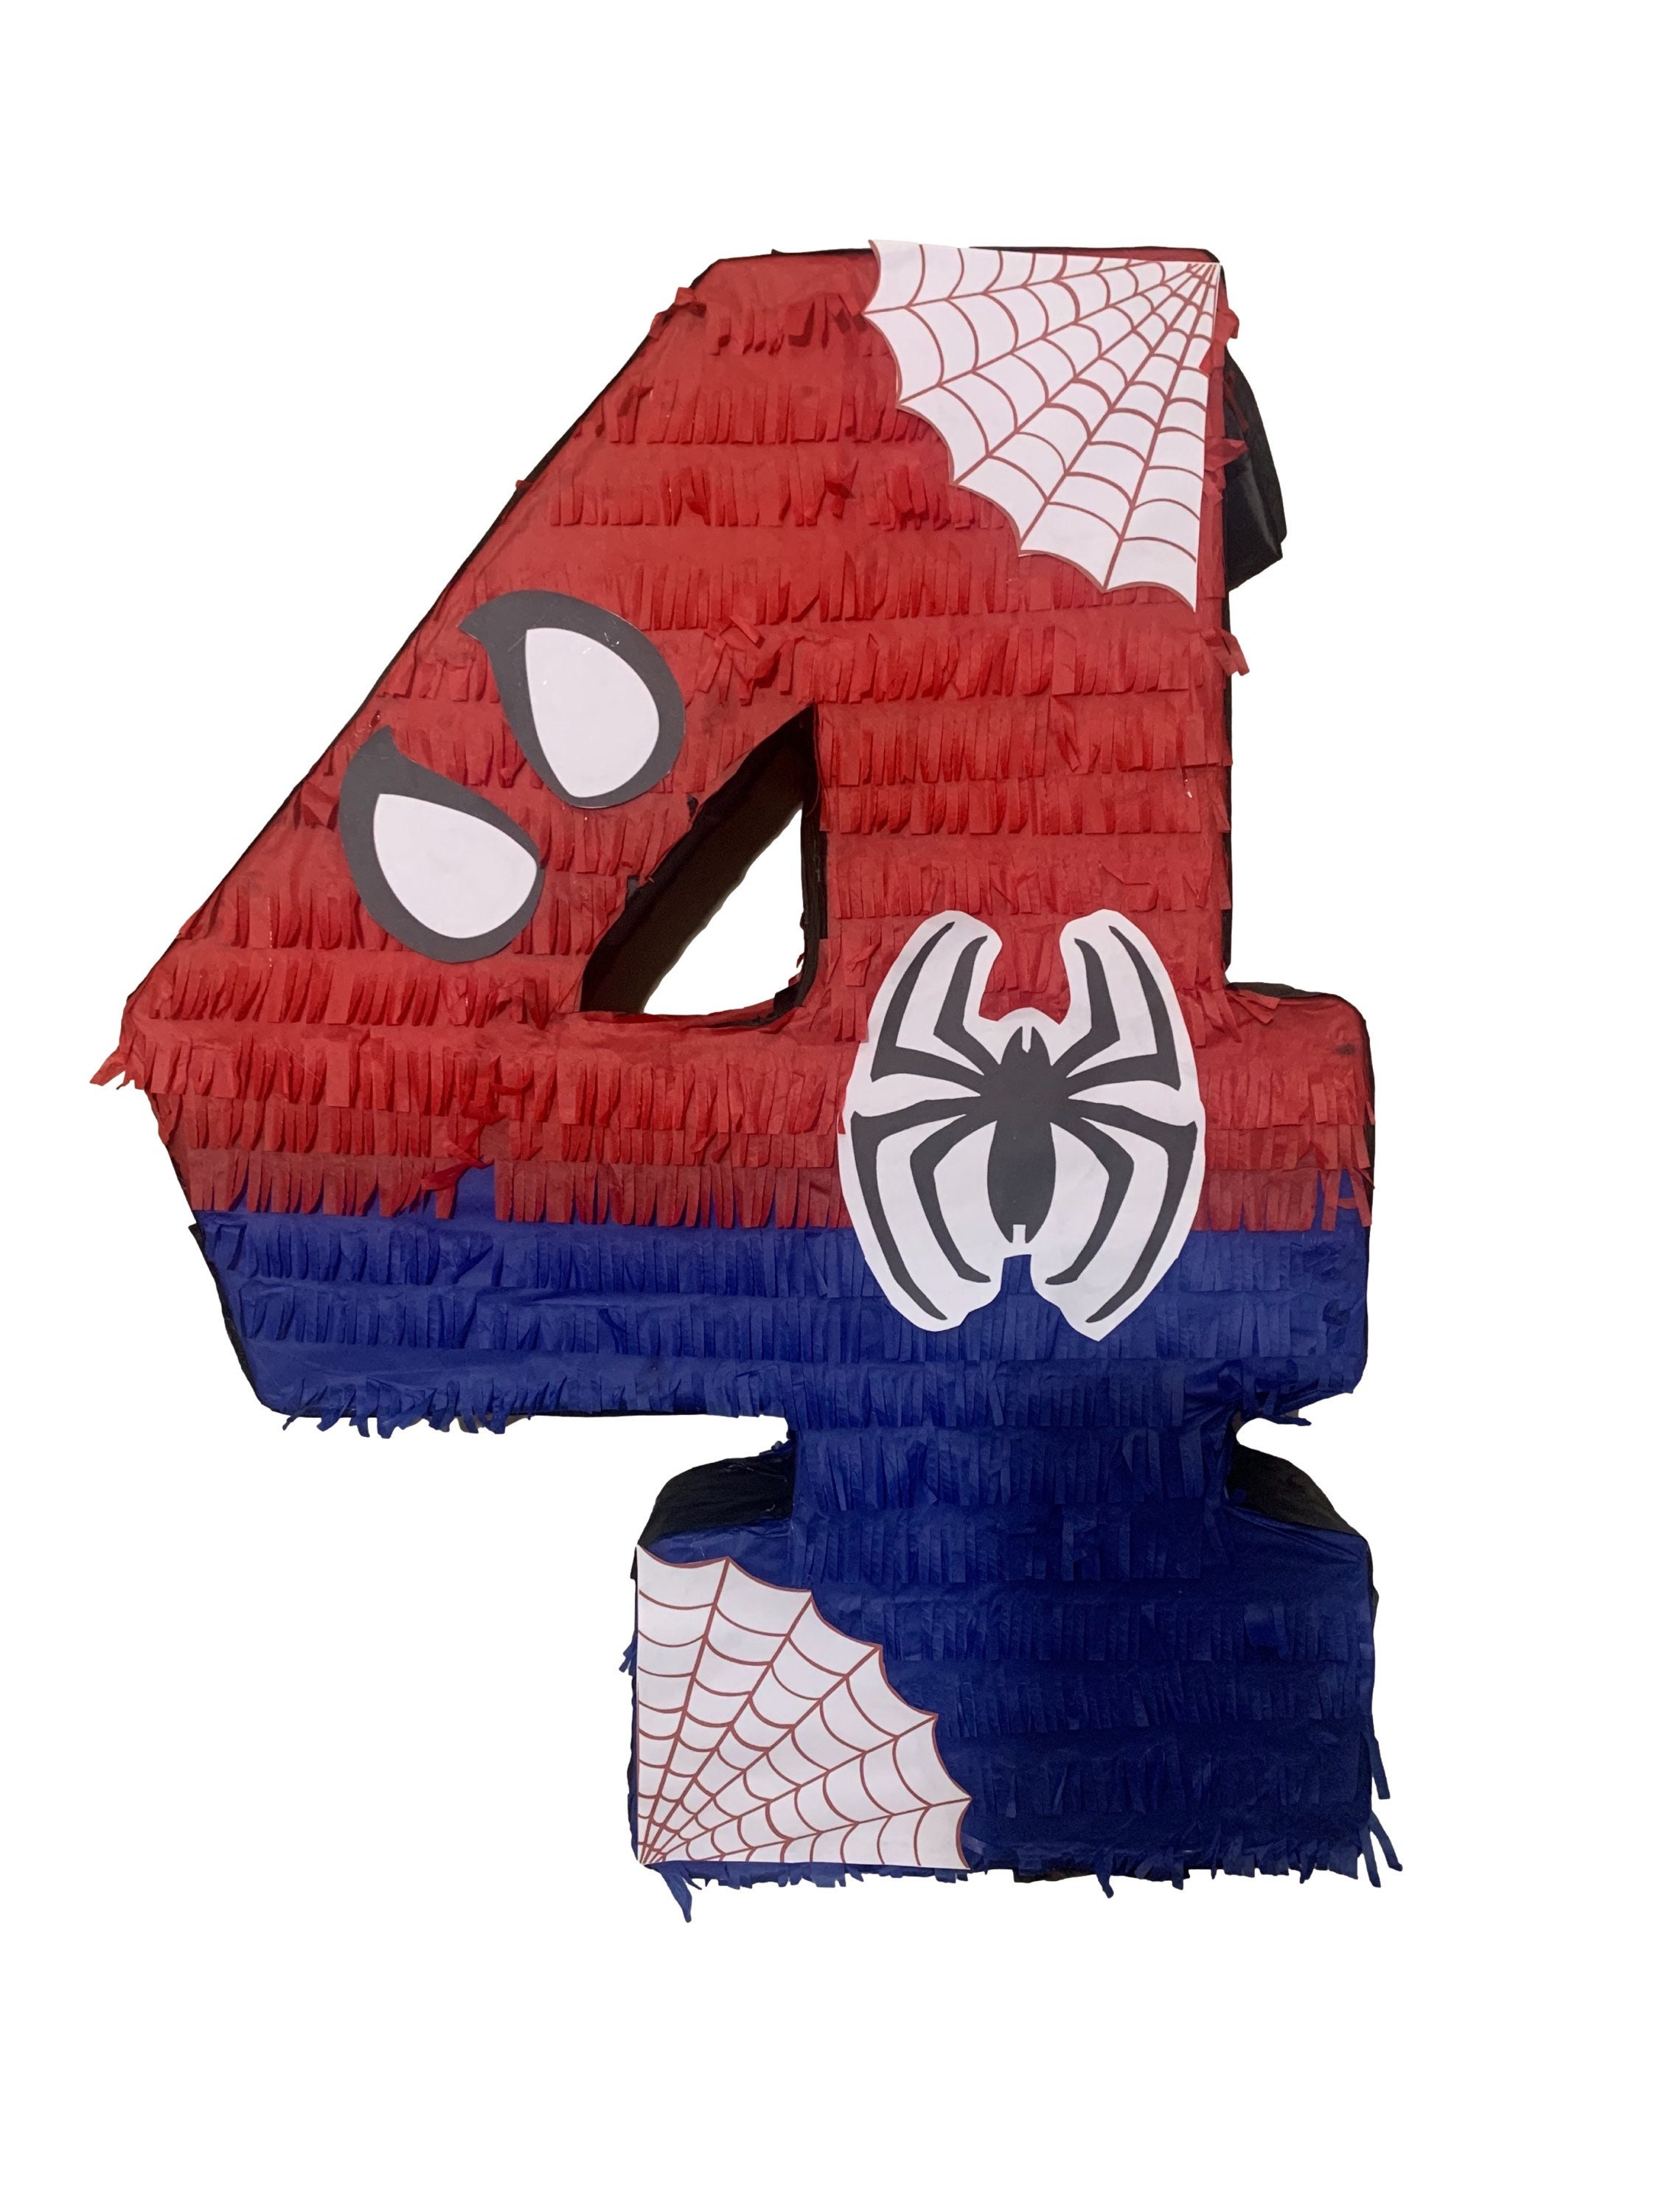 🕸️Piñata Spiderman, versión Spidey y sus sorprendentes amigos 🕸️ . #piñata  #pinata #piñatas #pinatas #piñateria #piñataparty #piñatatime #…